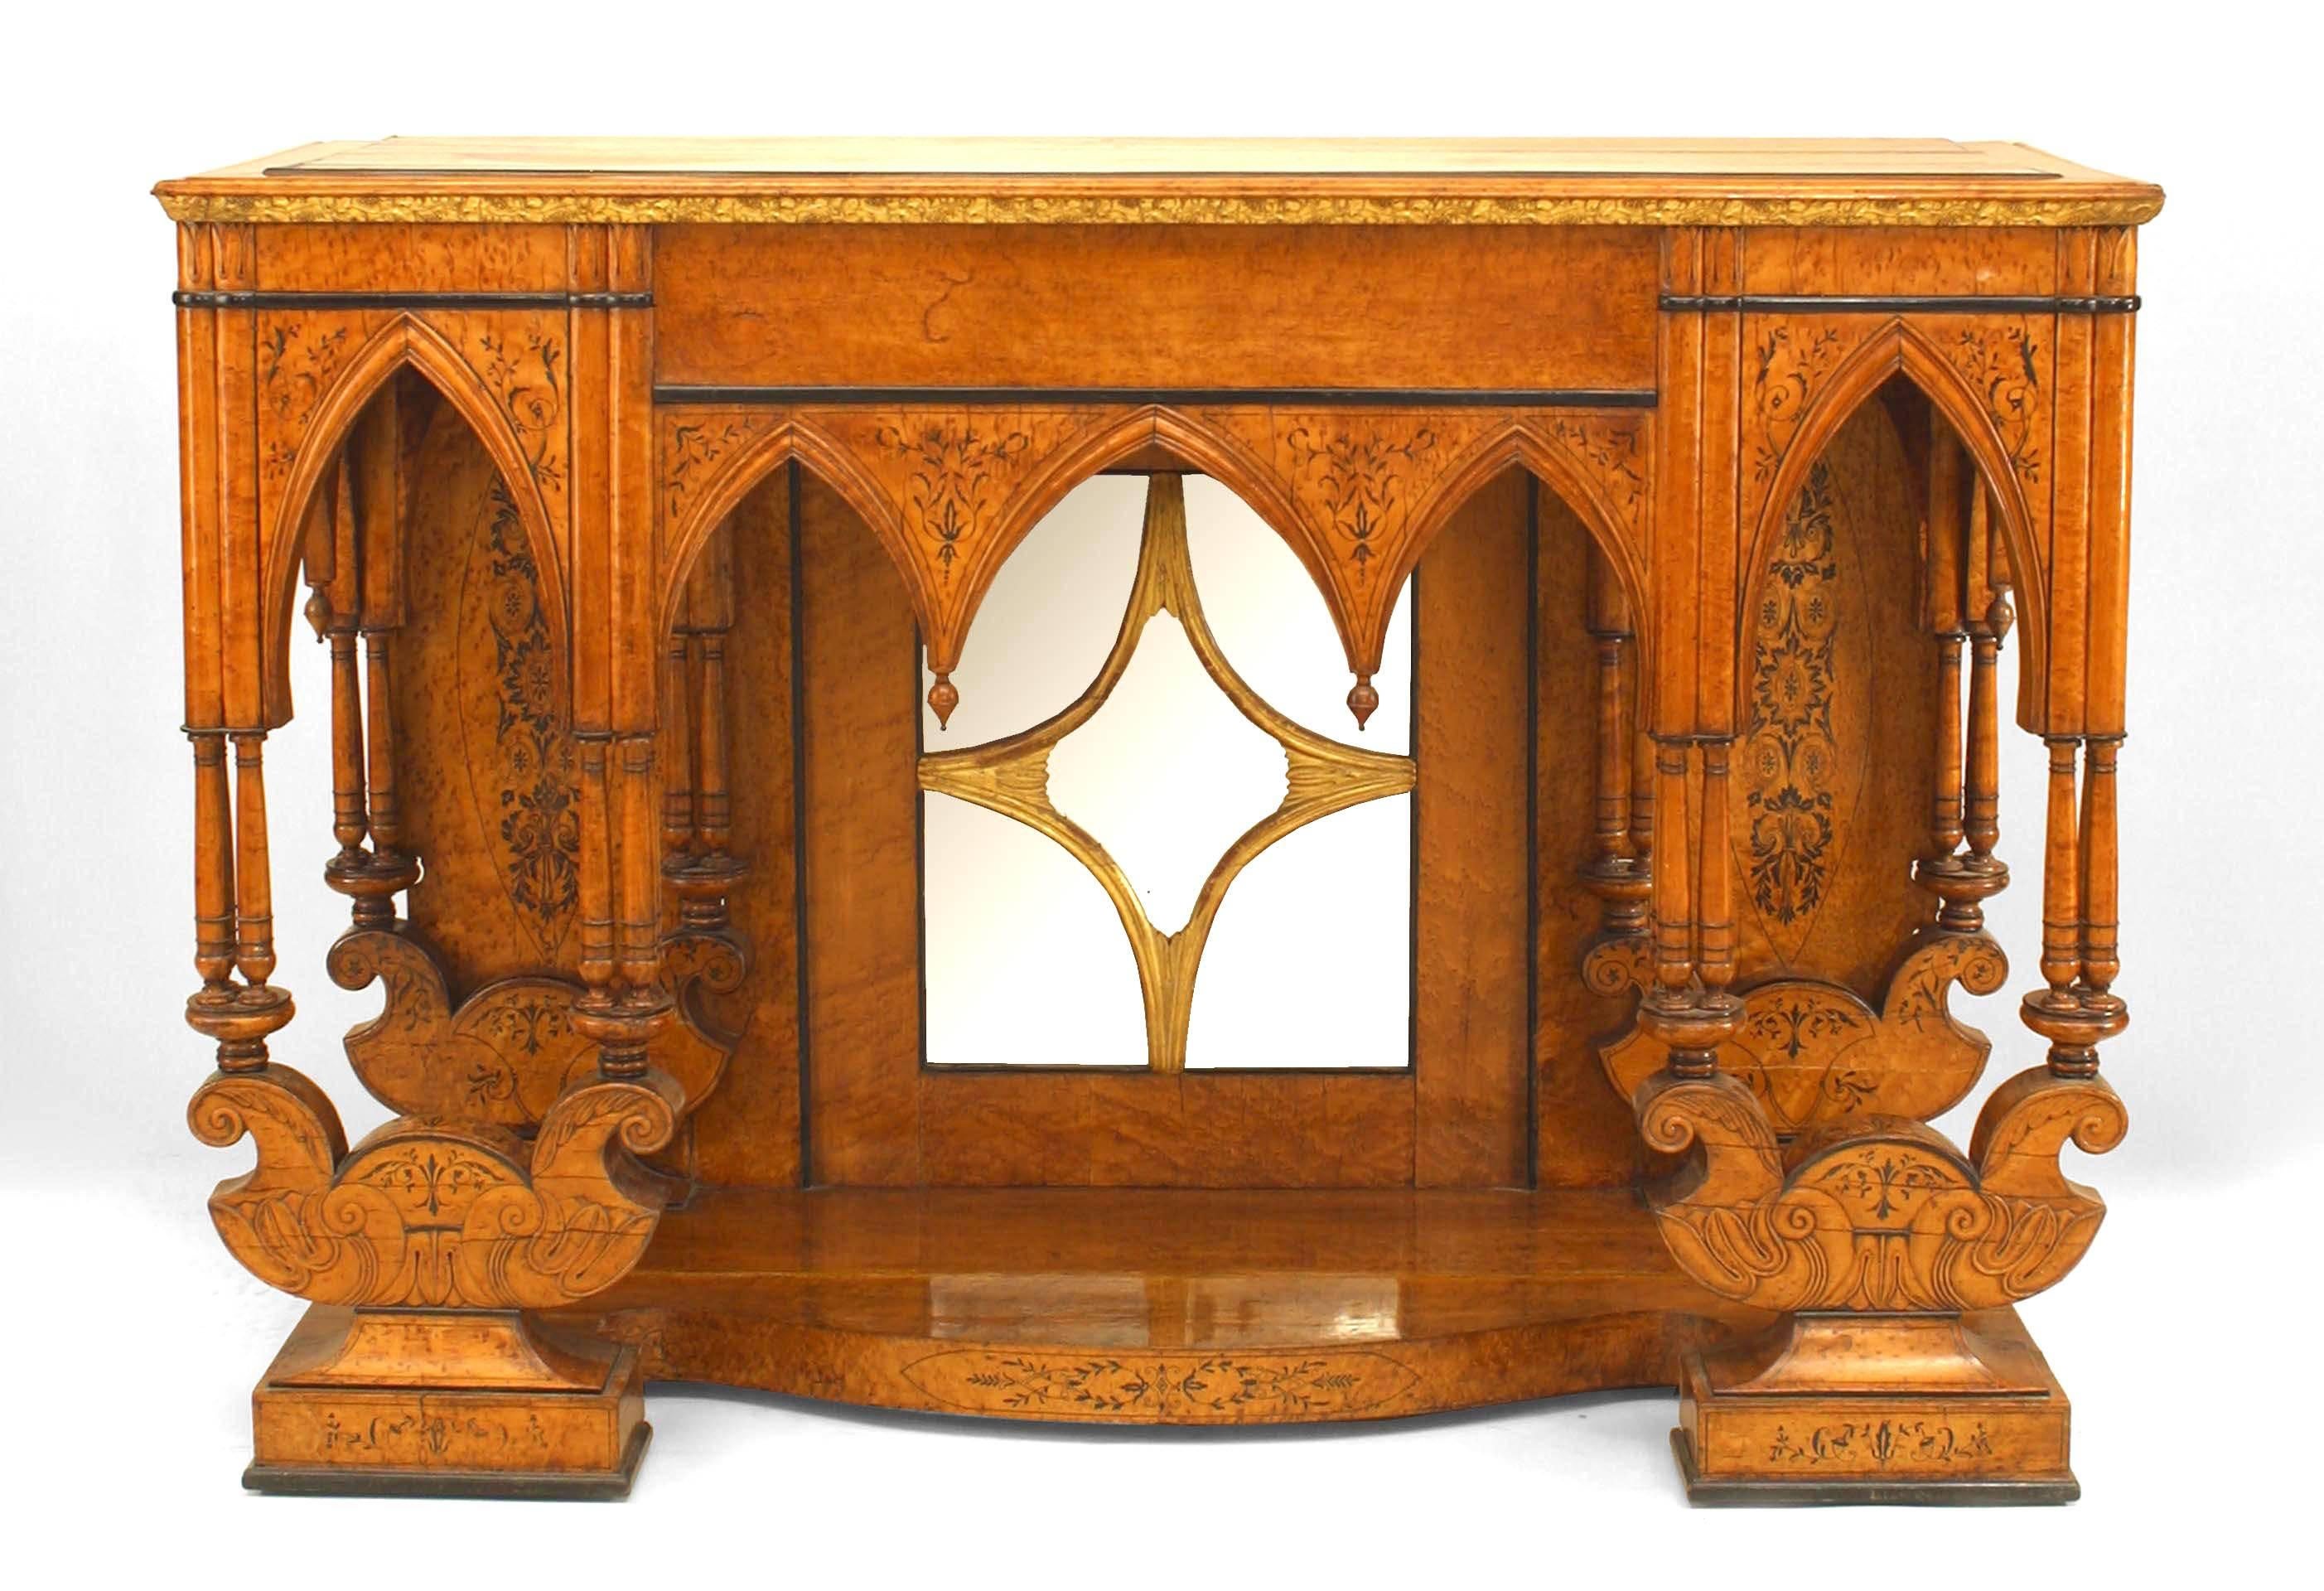 Table console de style gothique Charles X en érable piqué et ébénisterie avec incrustations, avec base à plate-forme et dos en miroir avec bord sculpté floral doré sur le dessus.
